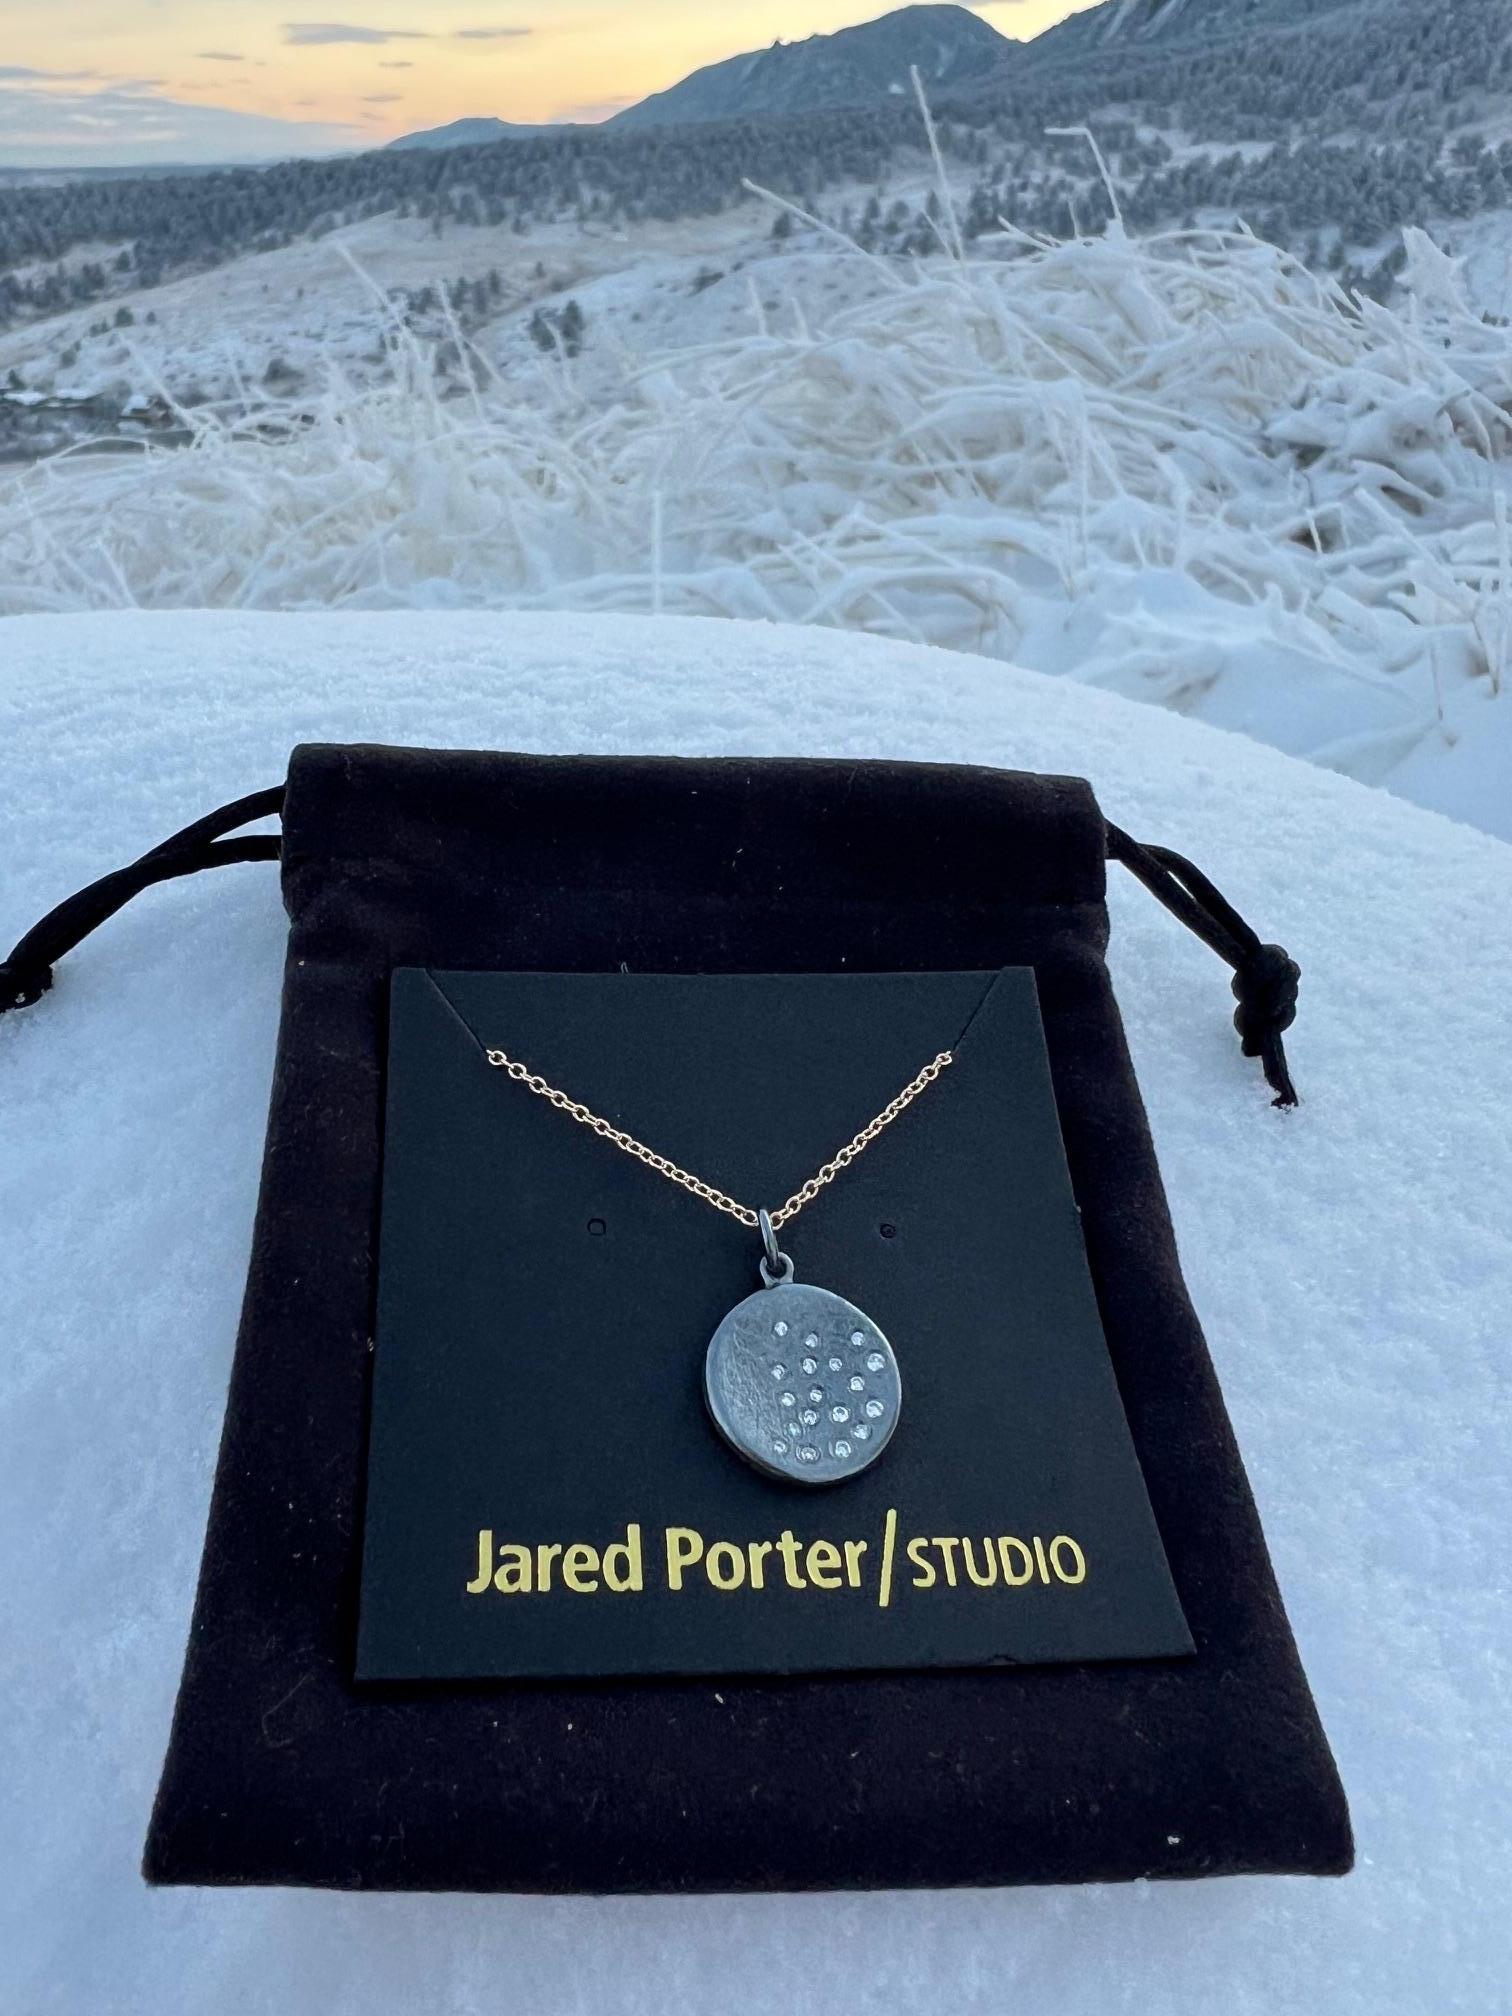 Magnifique pendentif fabriqué à la main par Jared Porter Studio.

L'inspiration derrière ce collier à porter tous les jours était de donner l'impression d'une chute de neige ou d'un ciel étoilé lumineux.  

Le disque est en argent sterling et